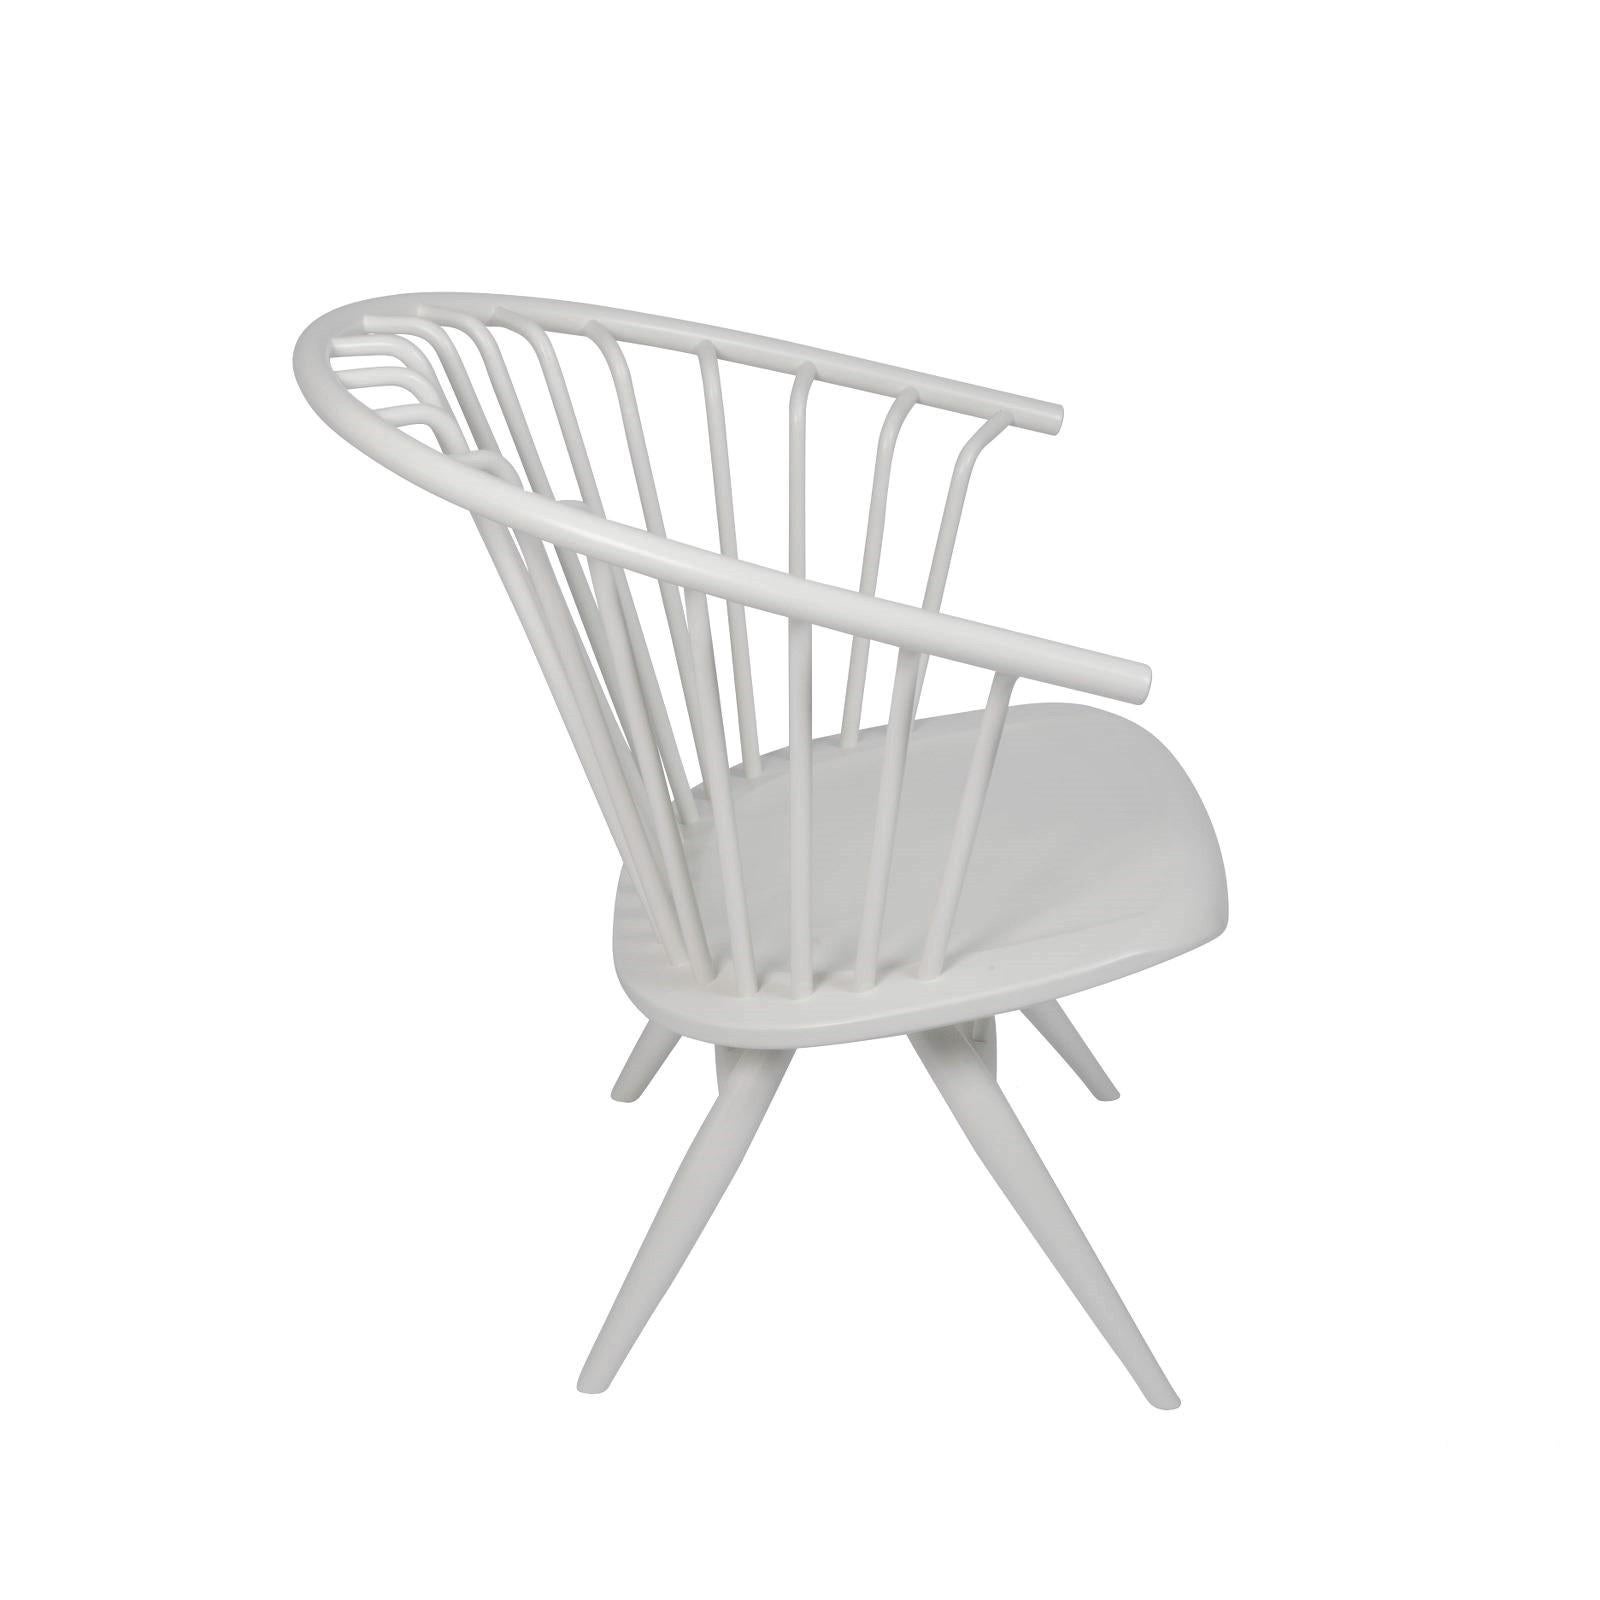 Der Sessel wurde vom Designer und Innenarchitekten Ilmari Tapiovaara 1969 entworfen und ist ein absoluter finischer Möbeldesign-Klassiker.

Der Sessel wurde aus massiver Birke gefertigt: der Sitz, der Rücken und auch der Rahmen. Die Sitzfläche